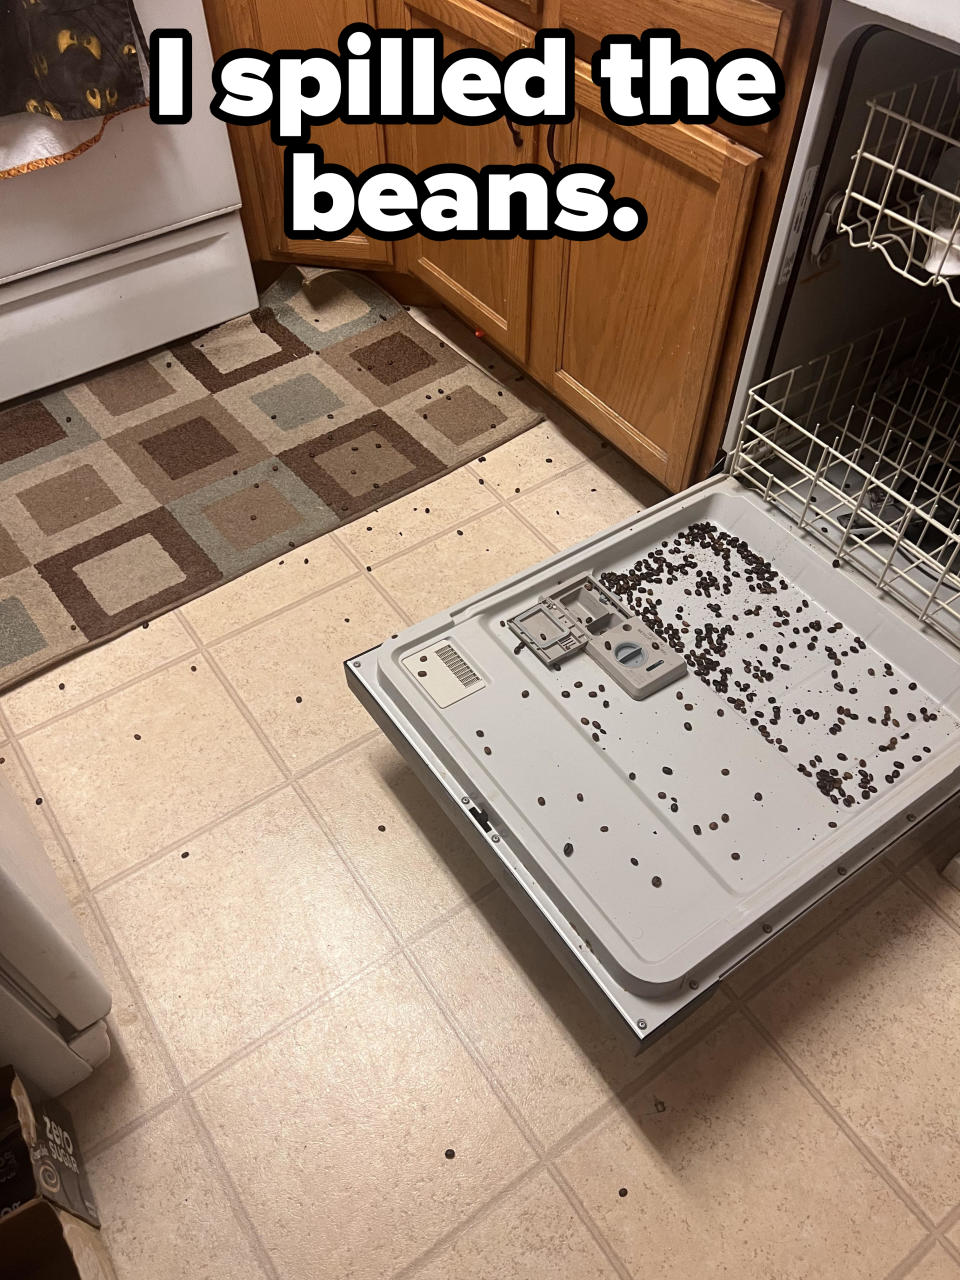 "I spilled the beans."